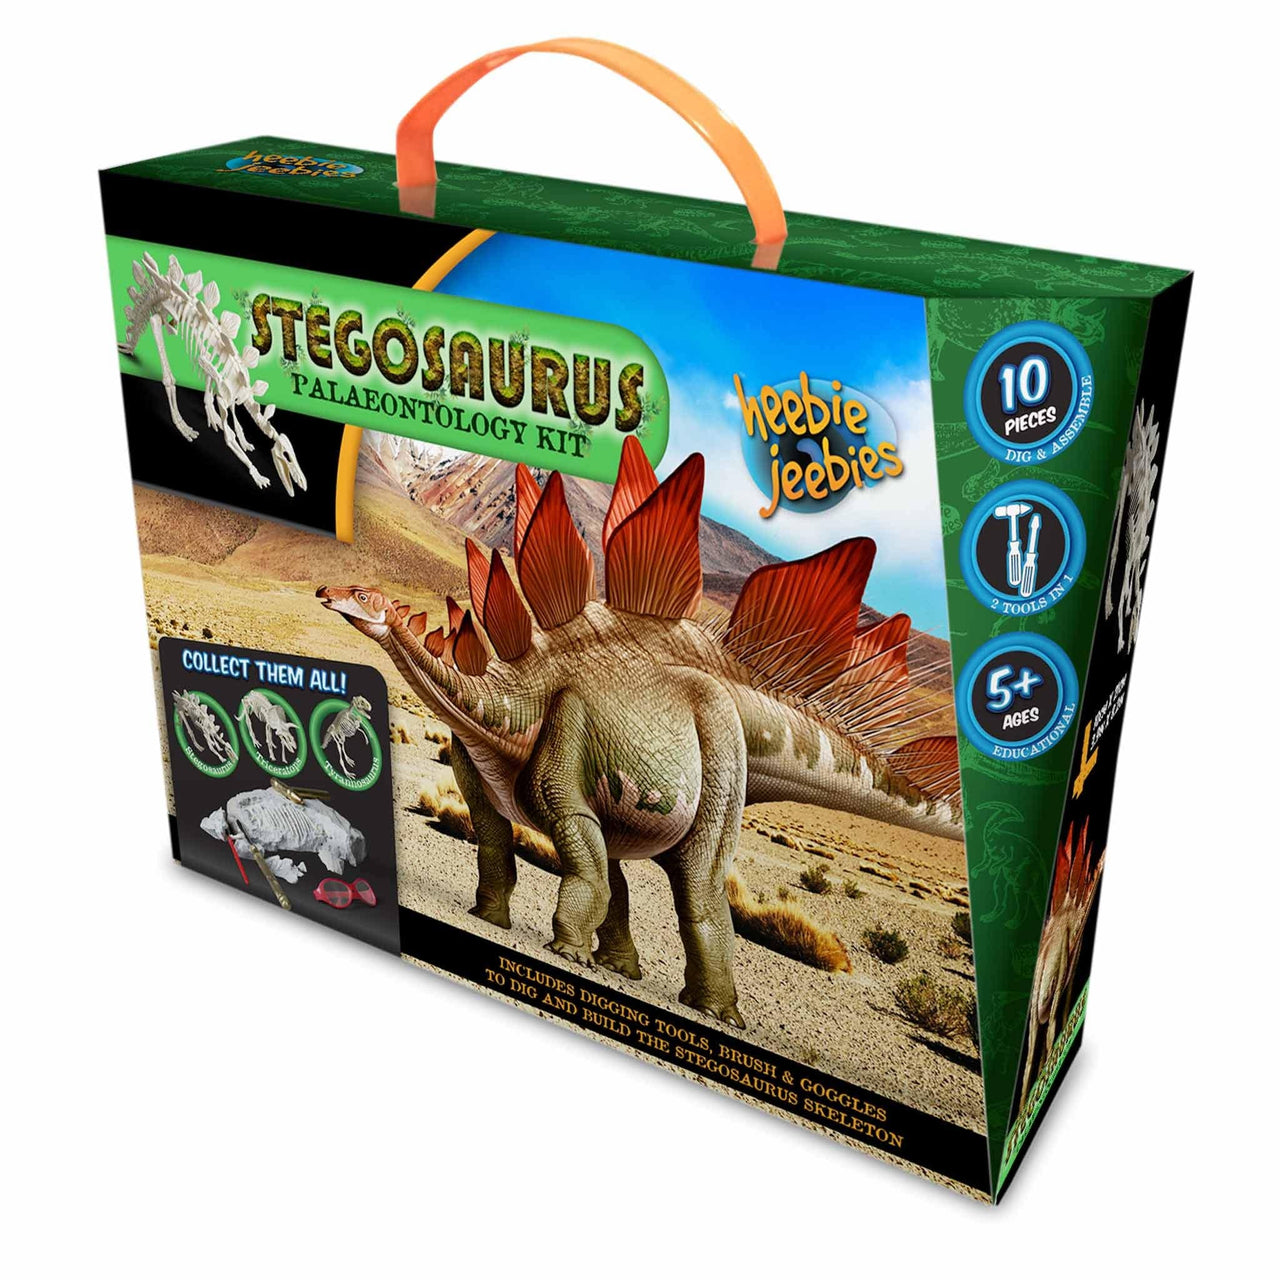 heebie jeebies stem Stegosaurus Palaeontology Kit